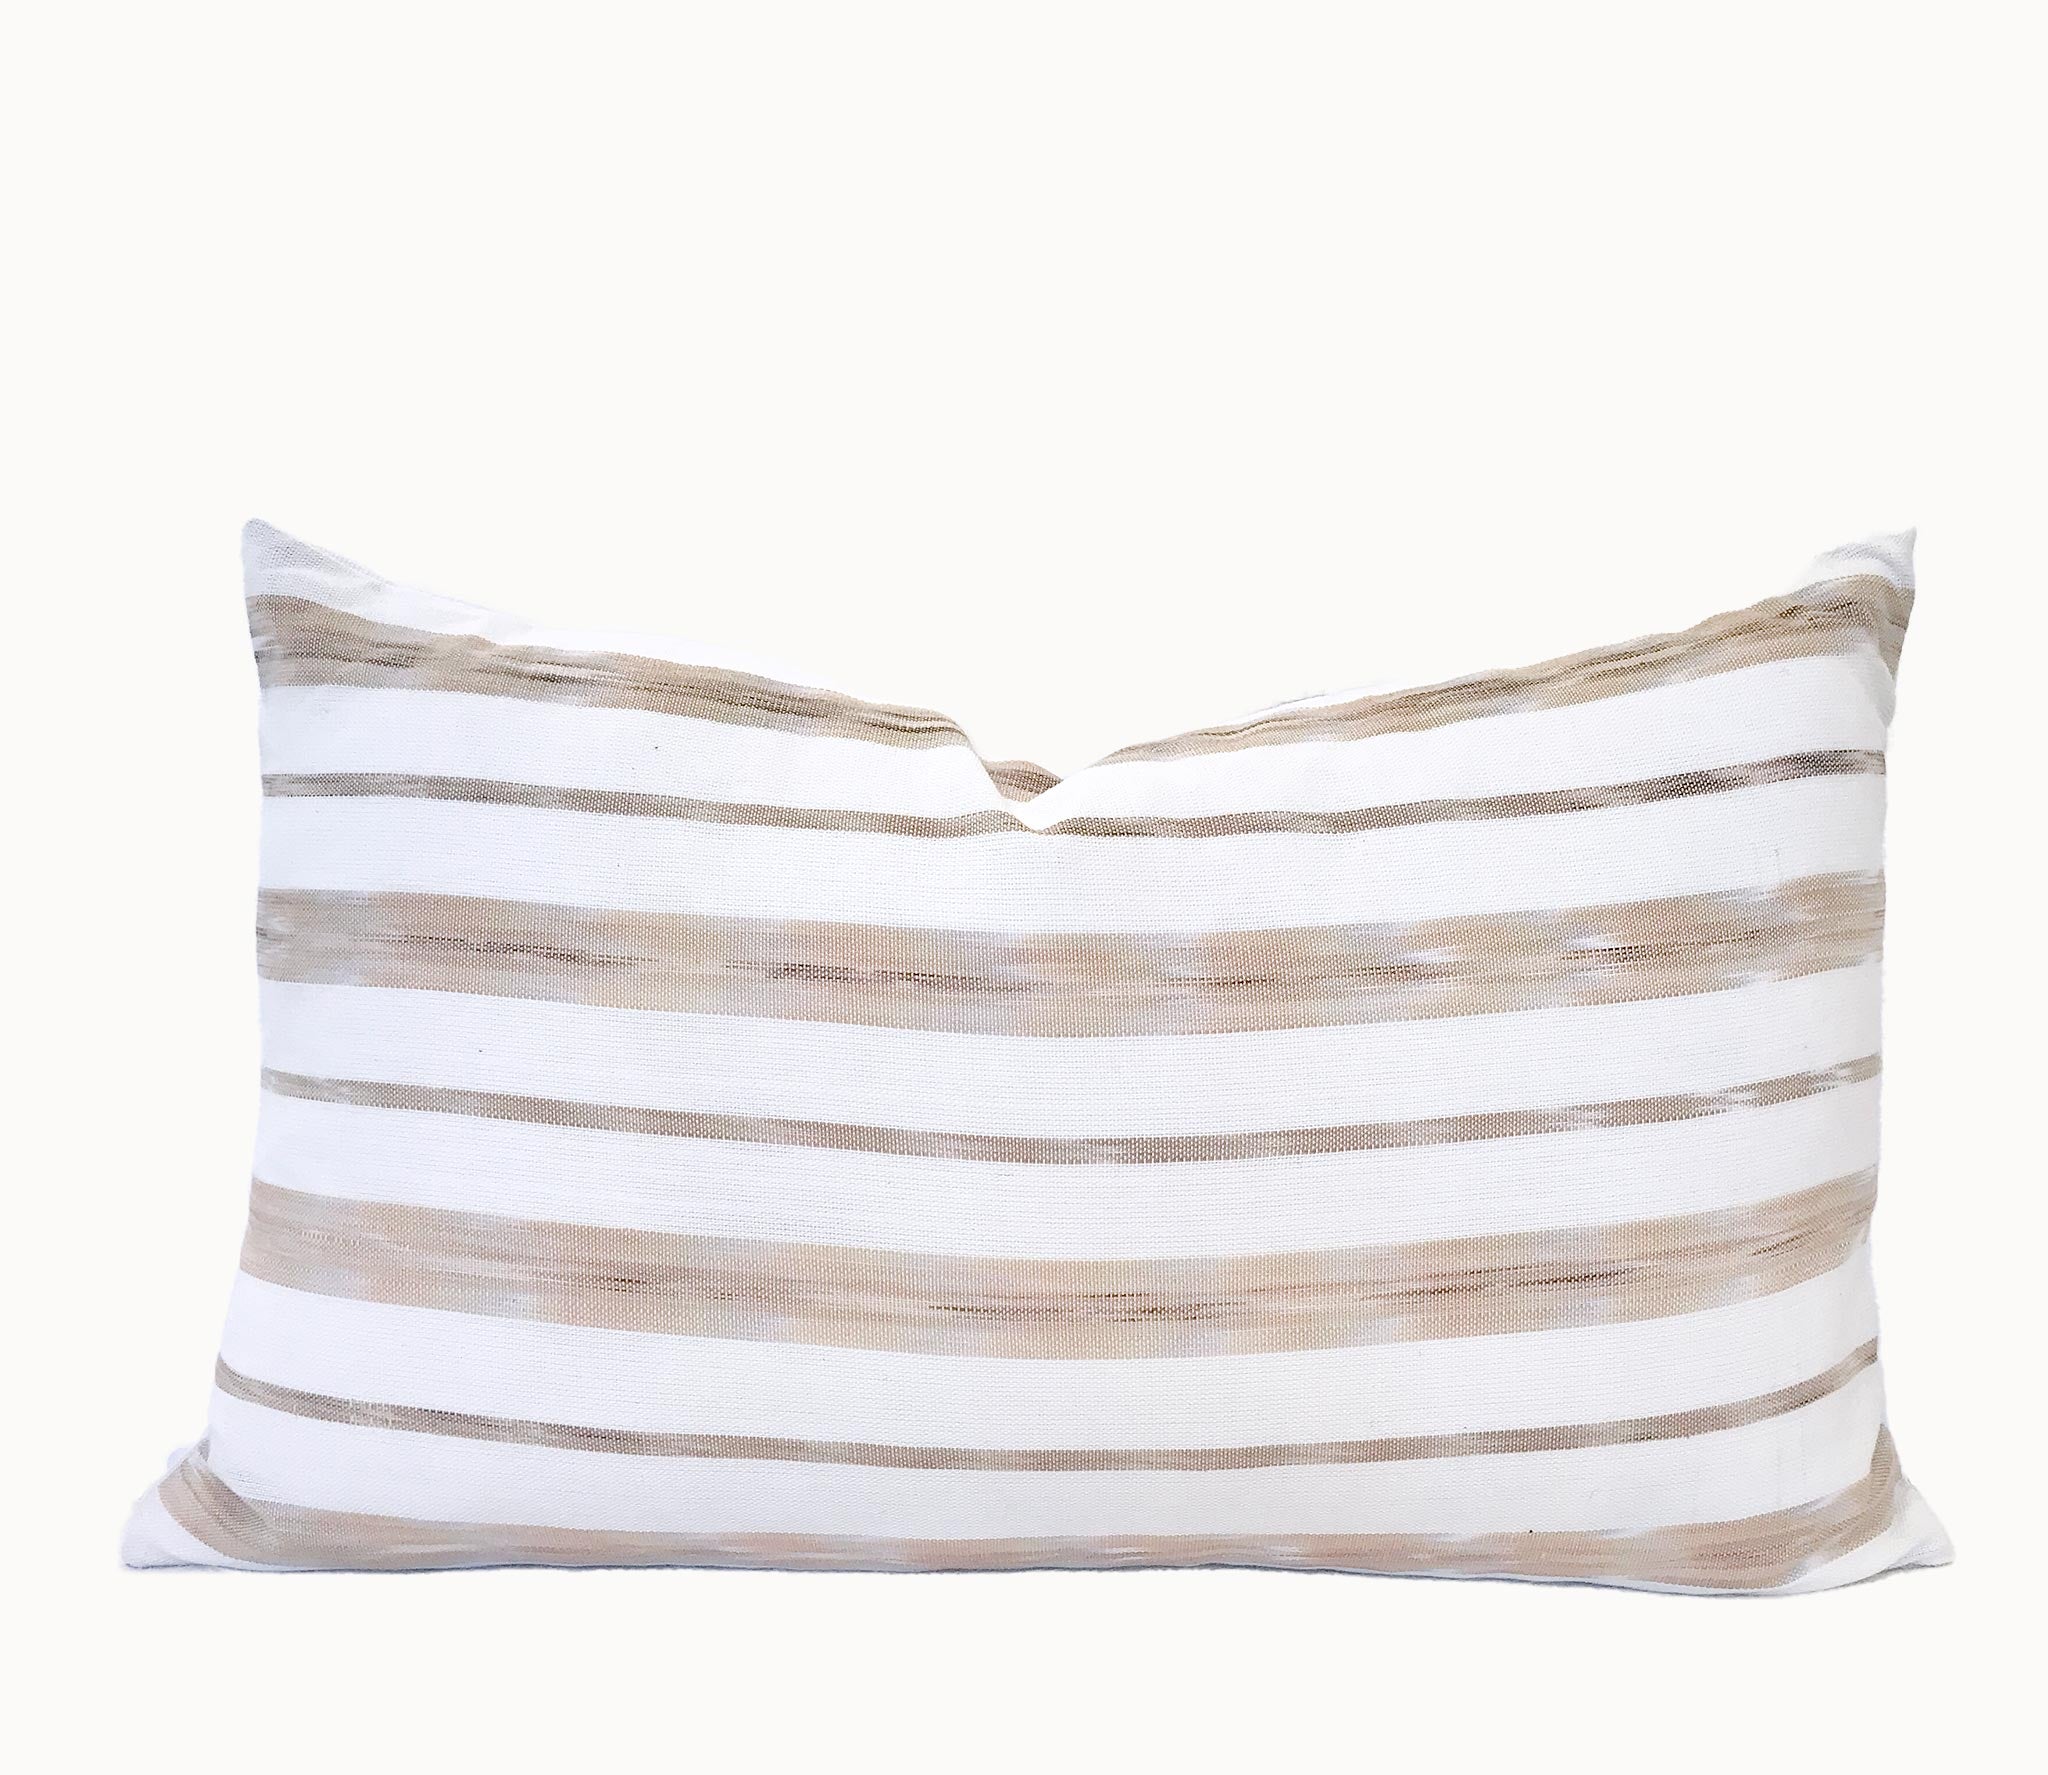 Capuccino - Ikat Lumbar Pillow